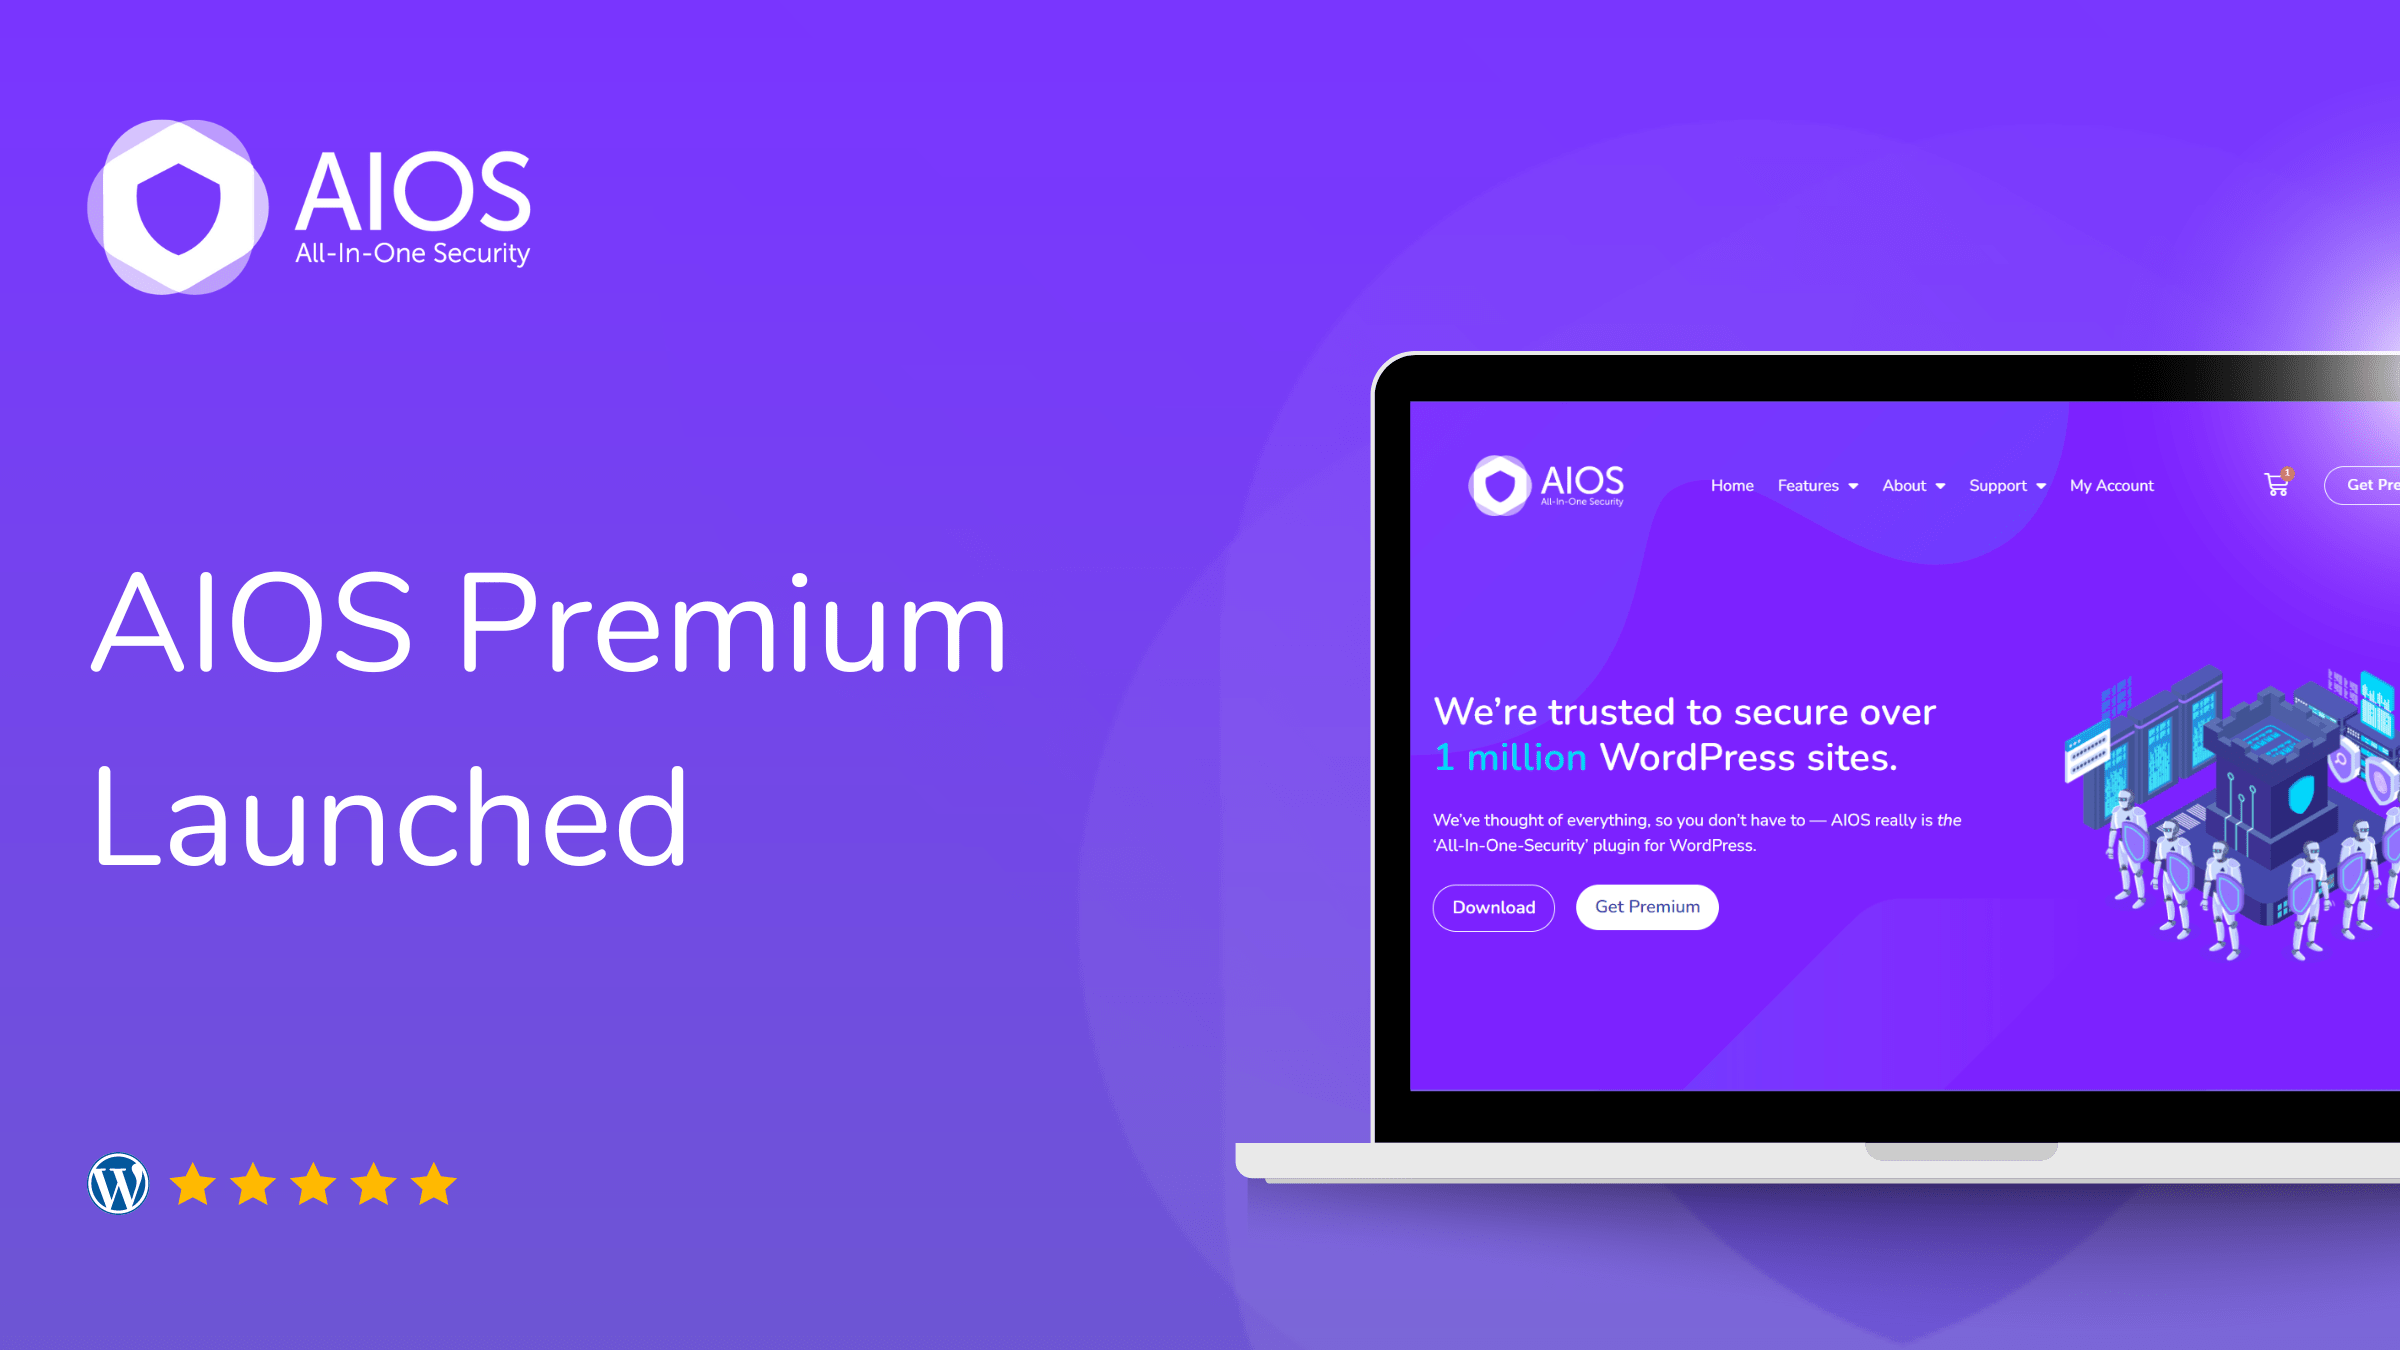 AIOS Premium released